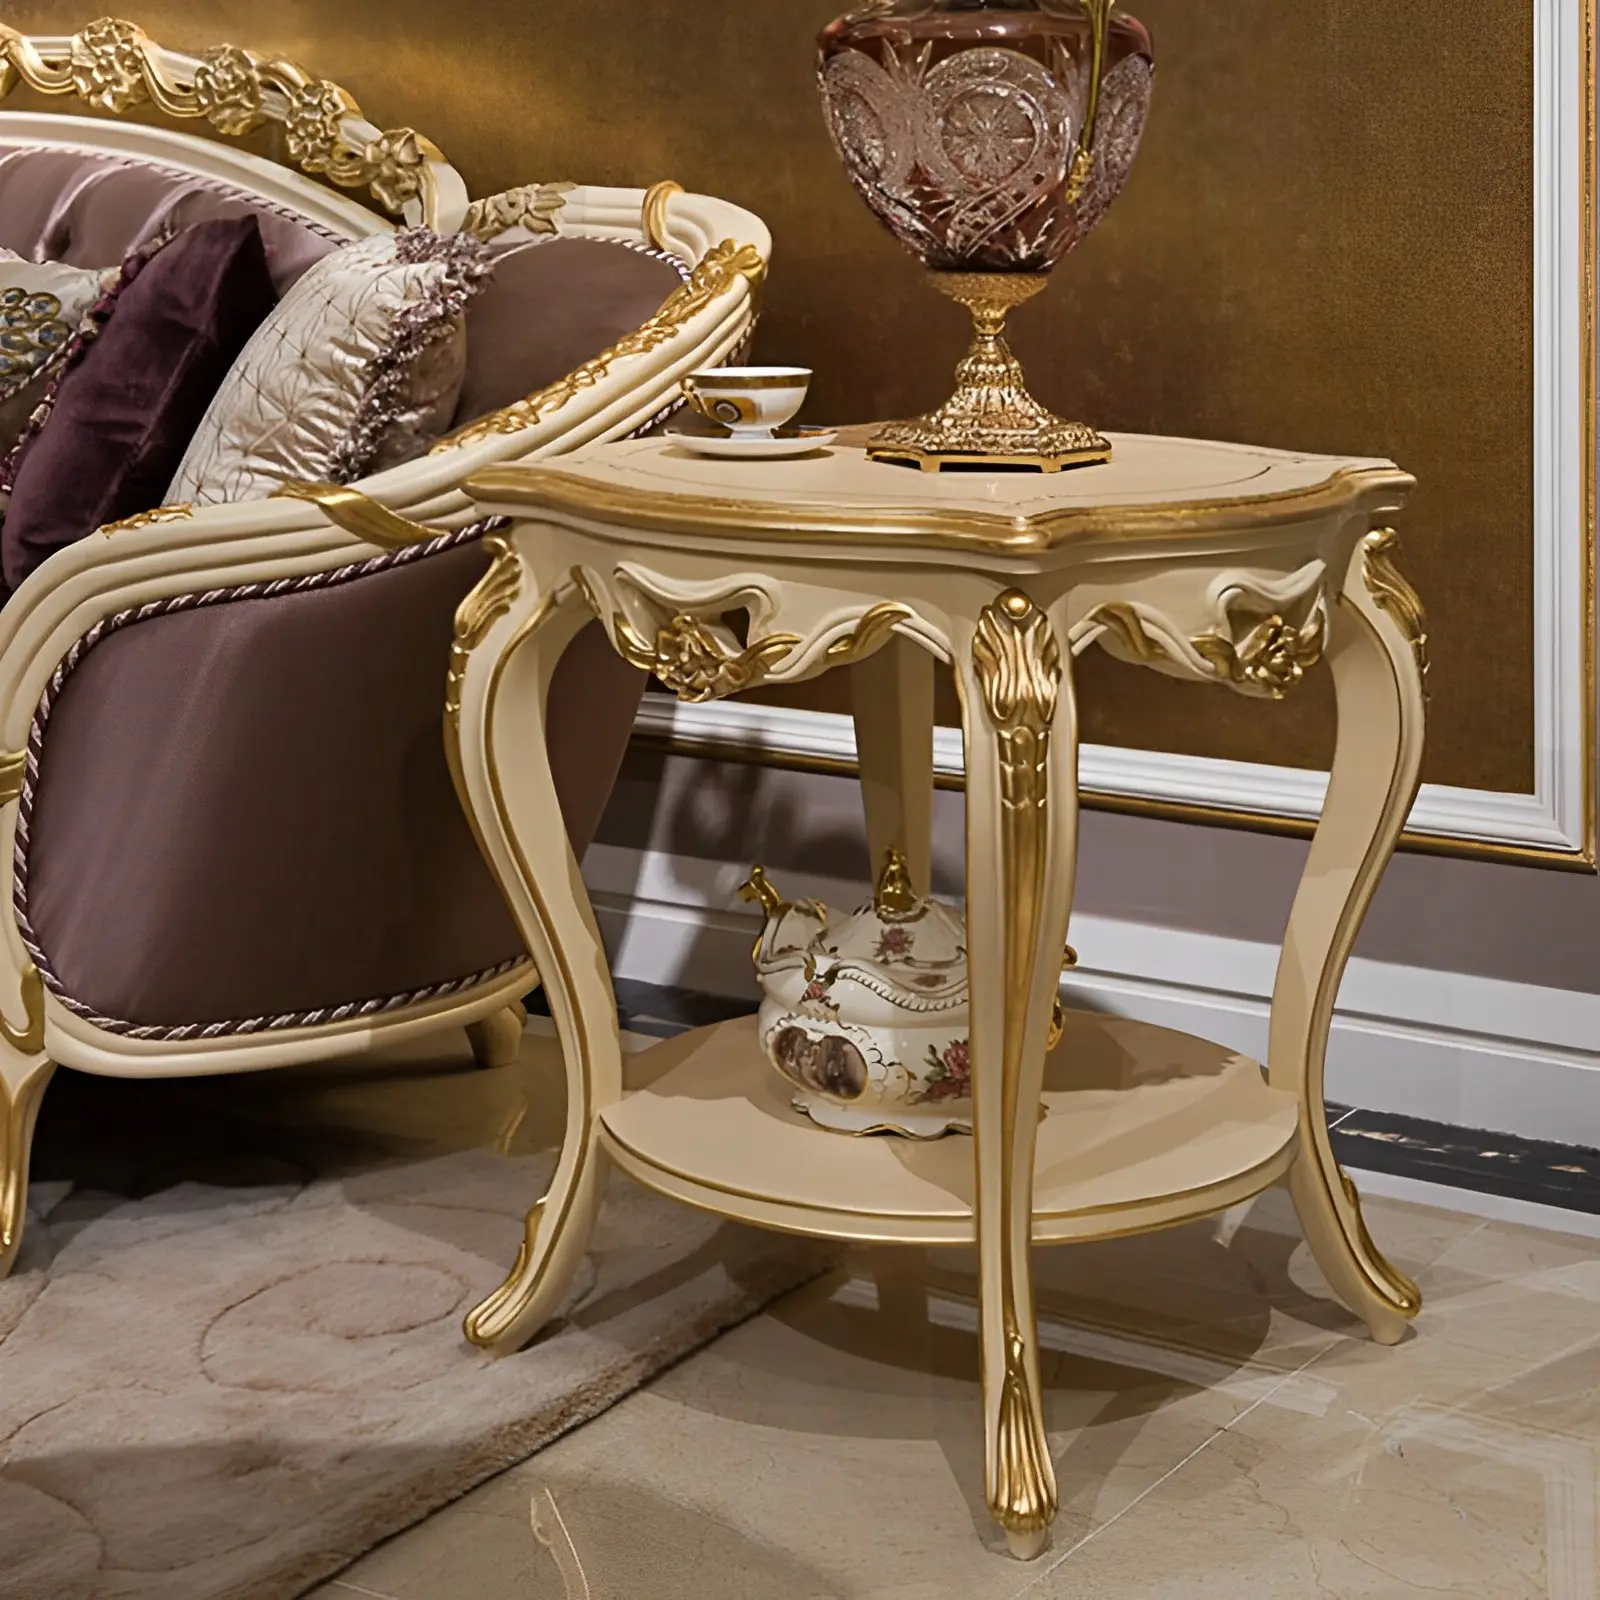 Table basse classique de style français Mobilier rond en feuille d'or beige de luxe pour le salon Table basse classique